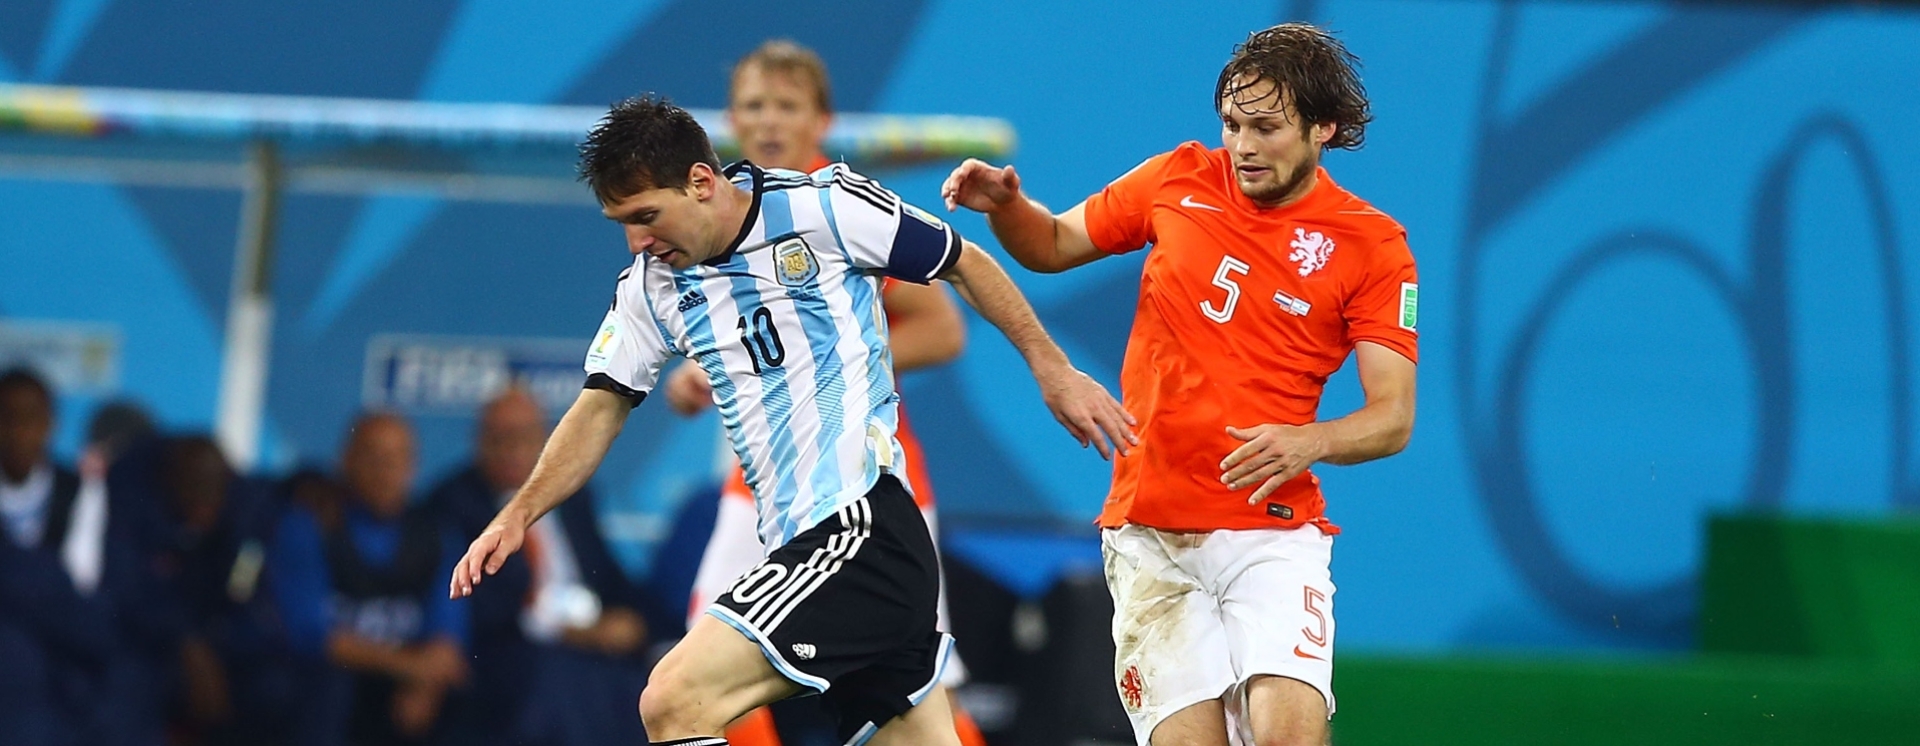 Μουντιάλ 2022, Ολλανδία - Αργεντινή: Ο κυνισμός του Φαν Χάαλ εναντίον της μαγείας του Μέσι για μια θέση στους «4»